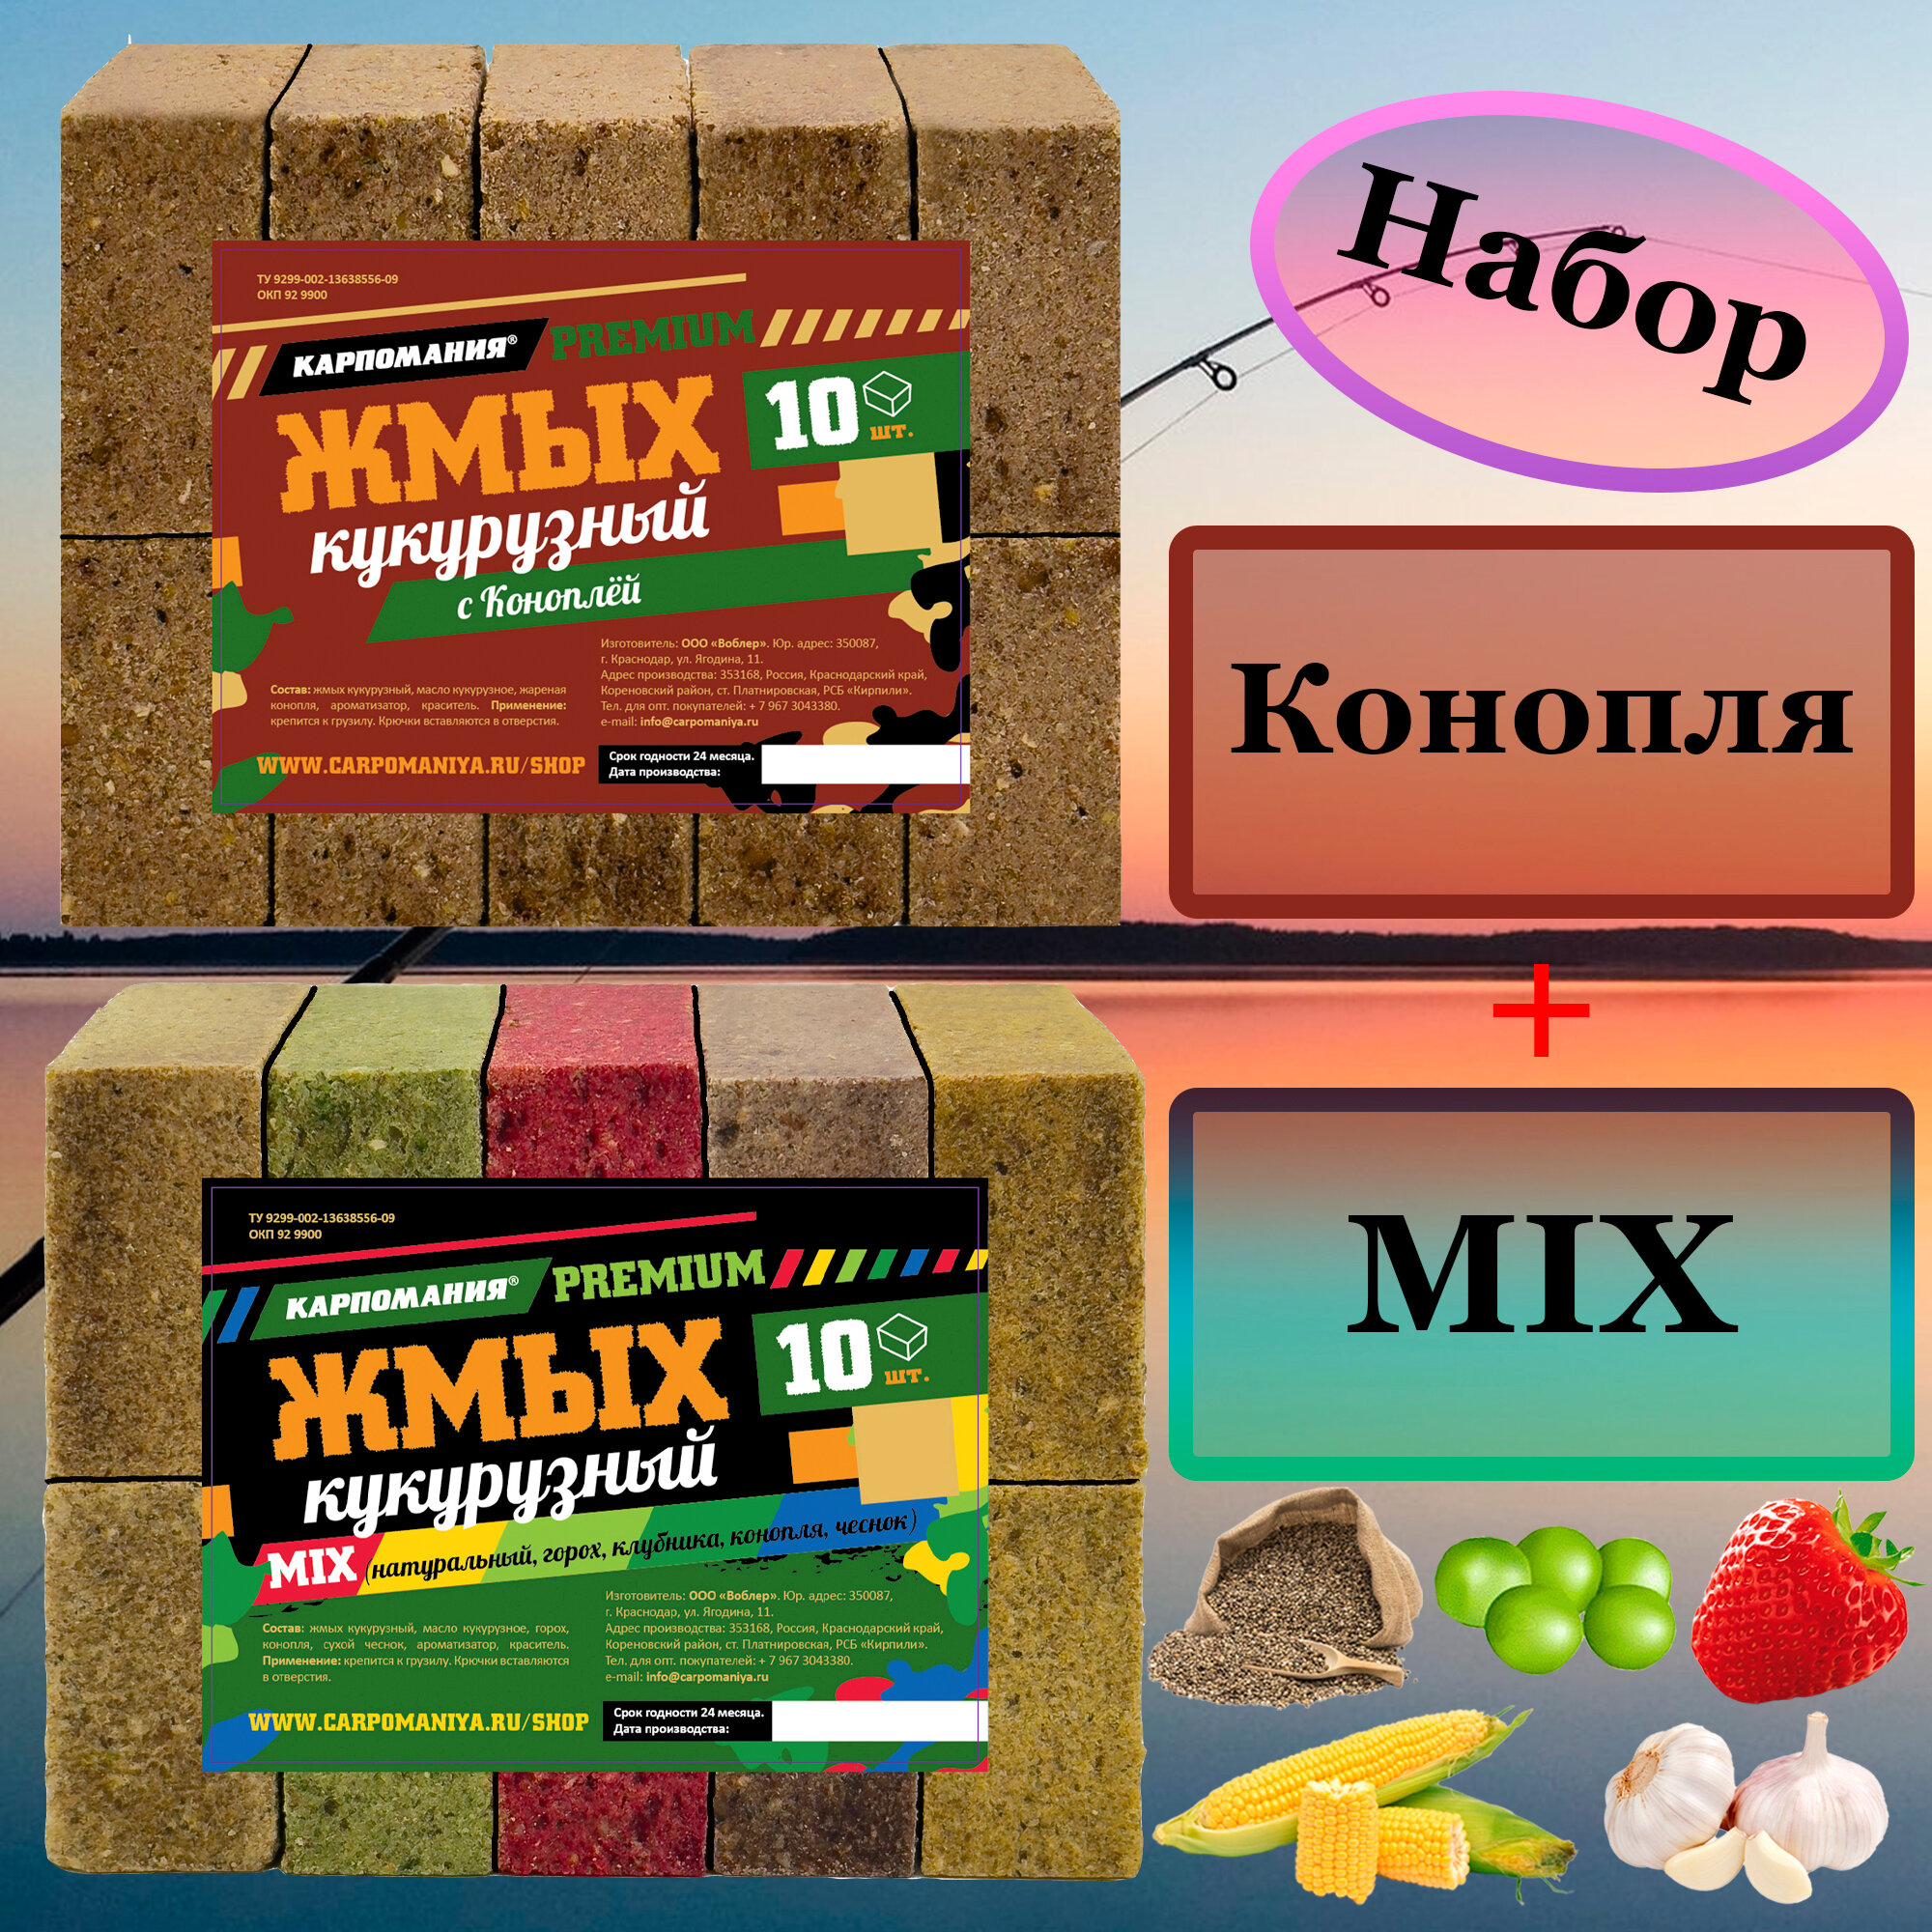 Набор 2шт Жмых кукурузный PREMIUM конопля+mix кубики